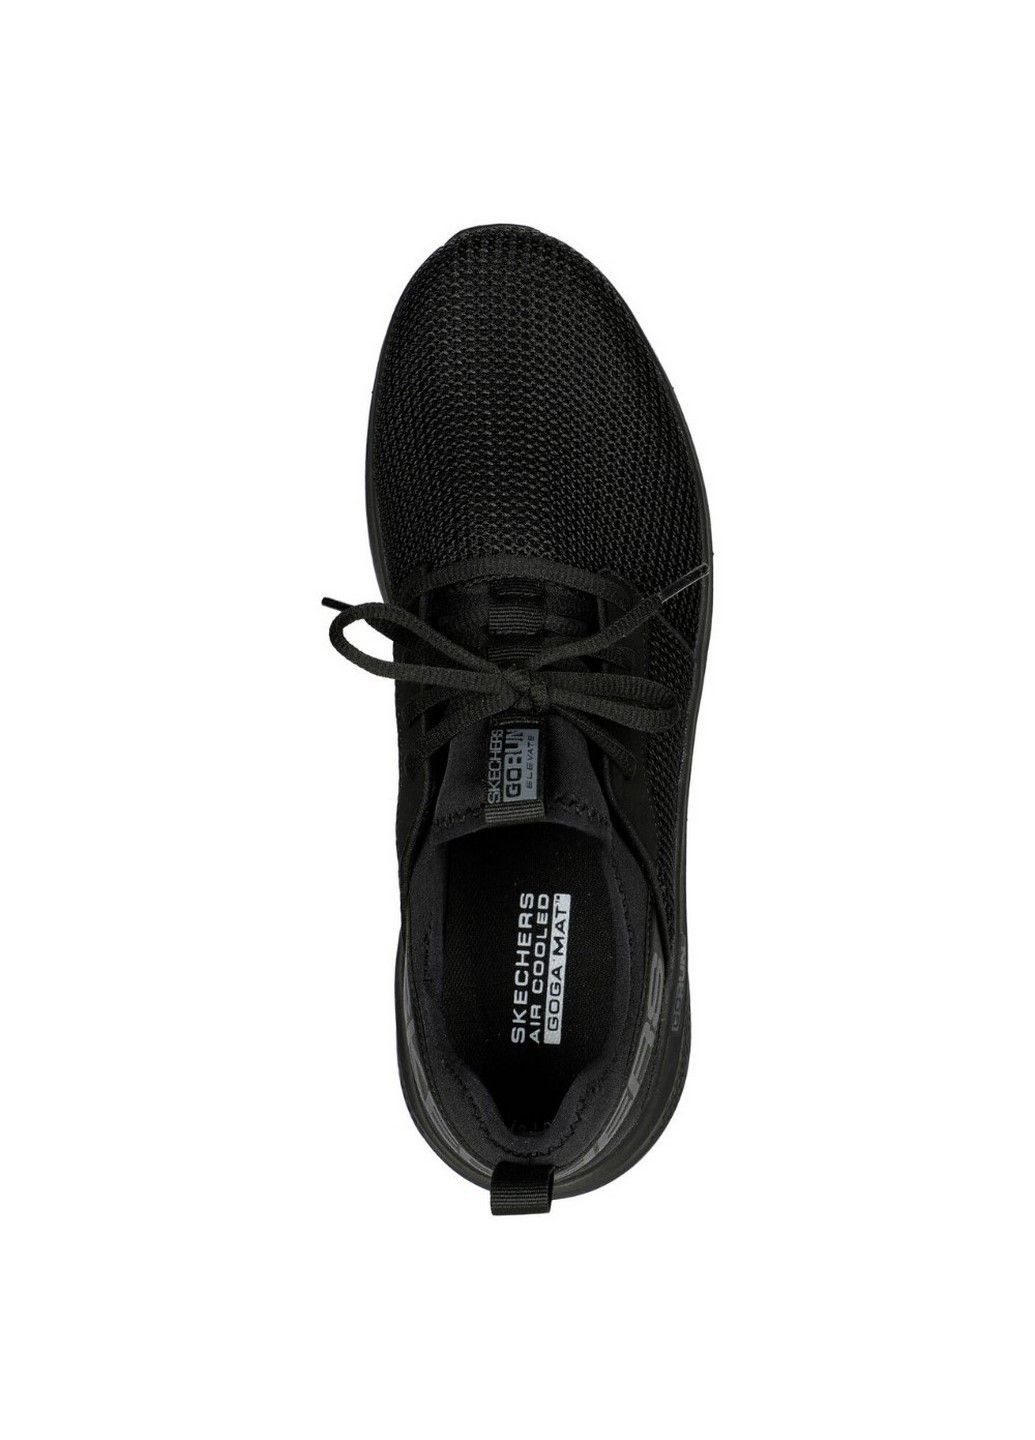 Черные летние мужские беговые кроссовки go run elevate 220329 bbk Skechers